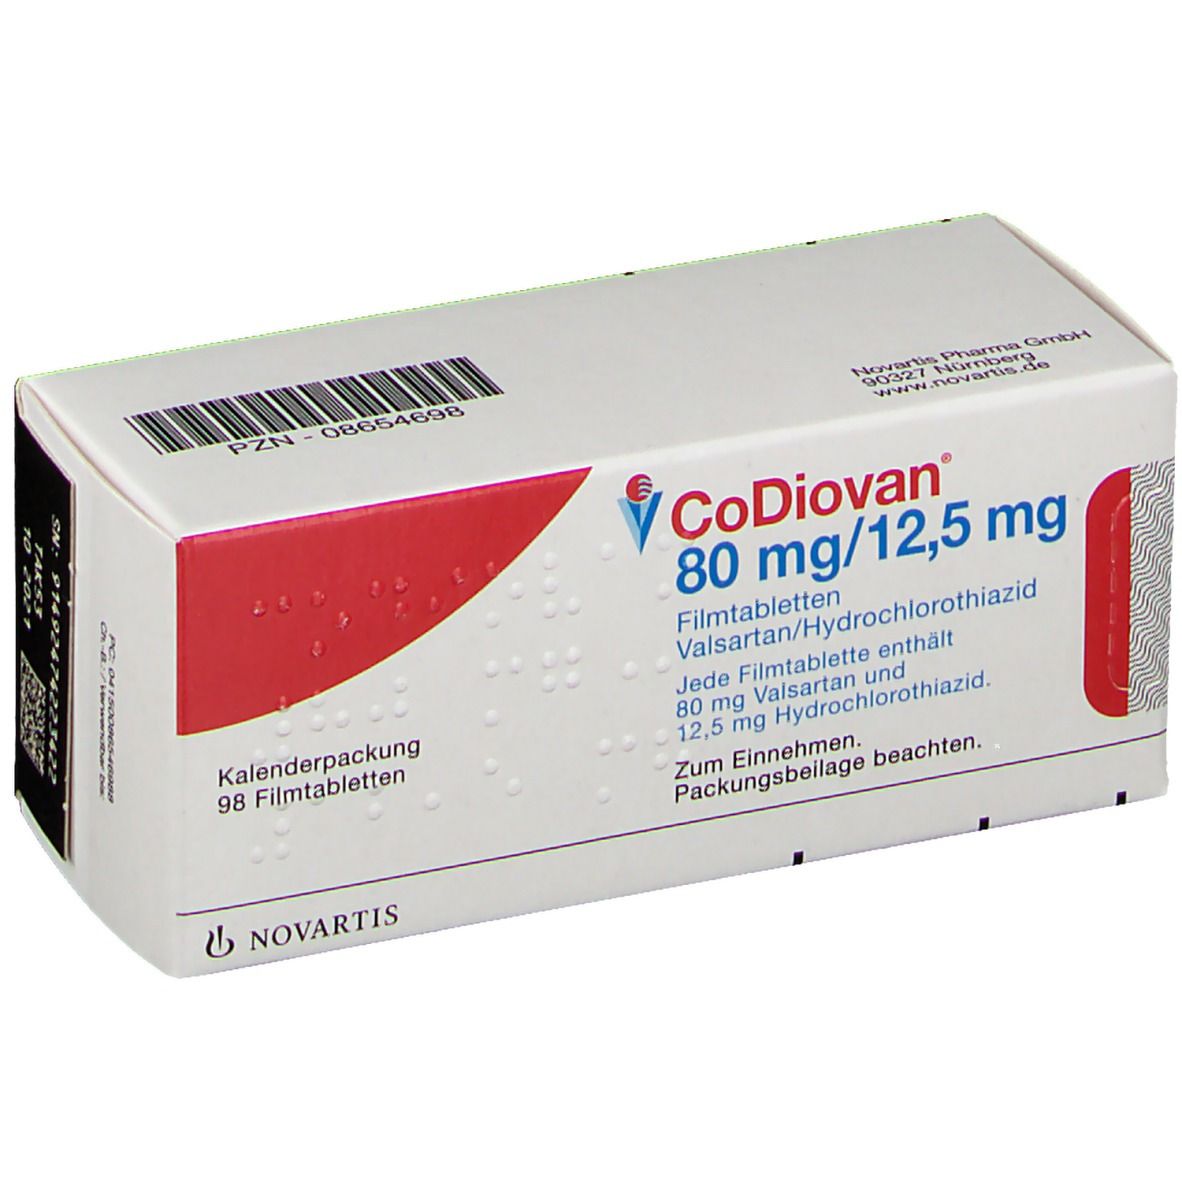 CoDiovan® 80 mg/12,5 mg